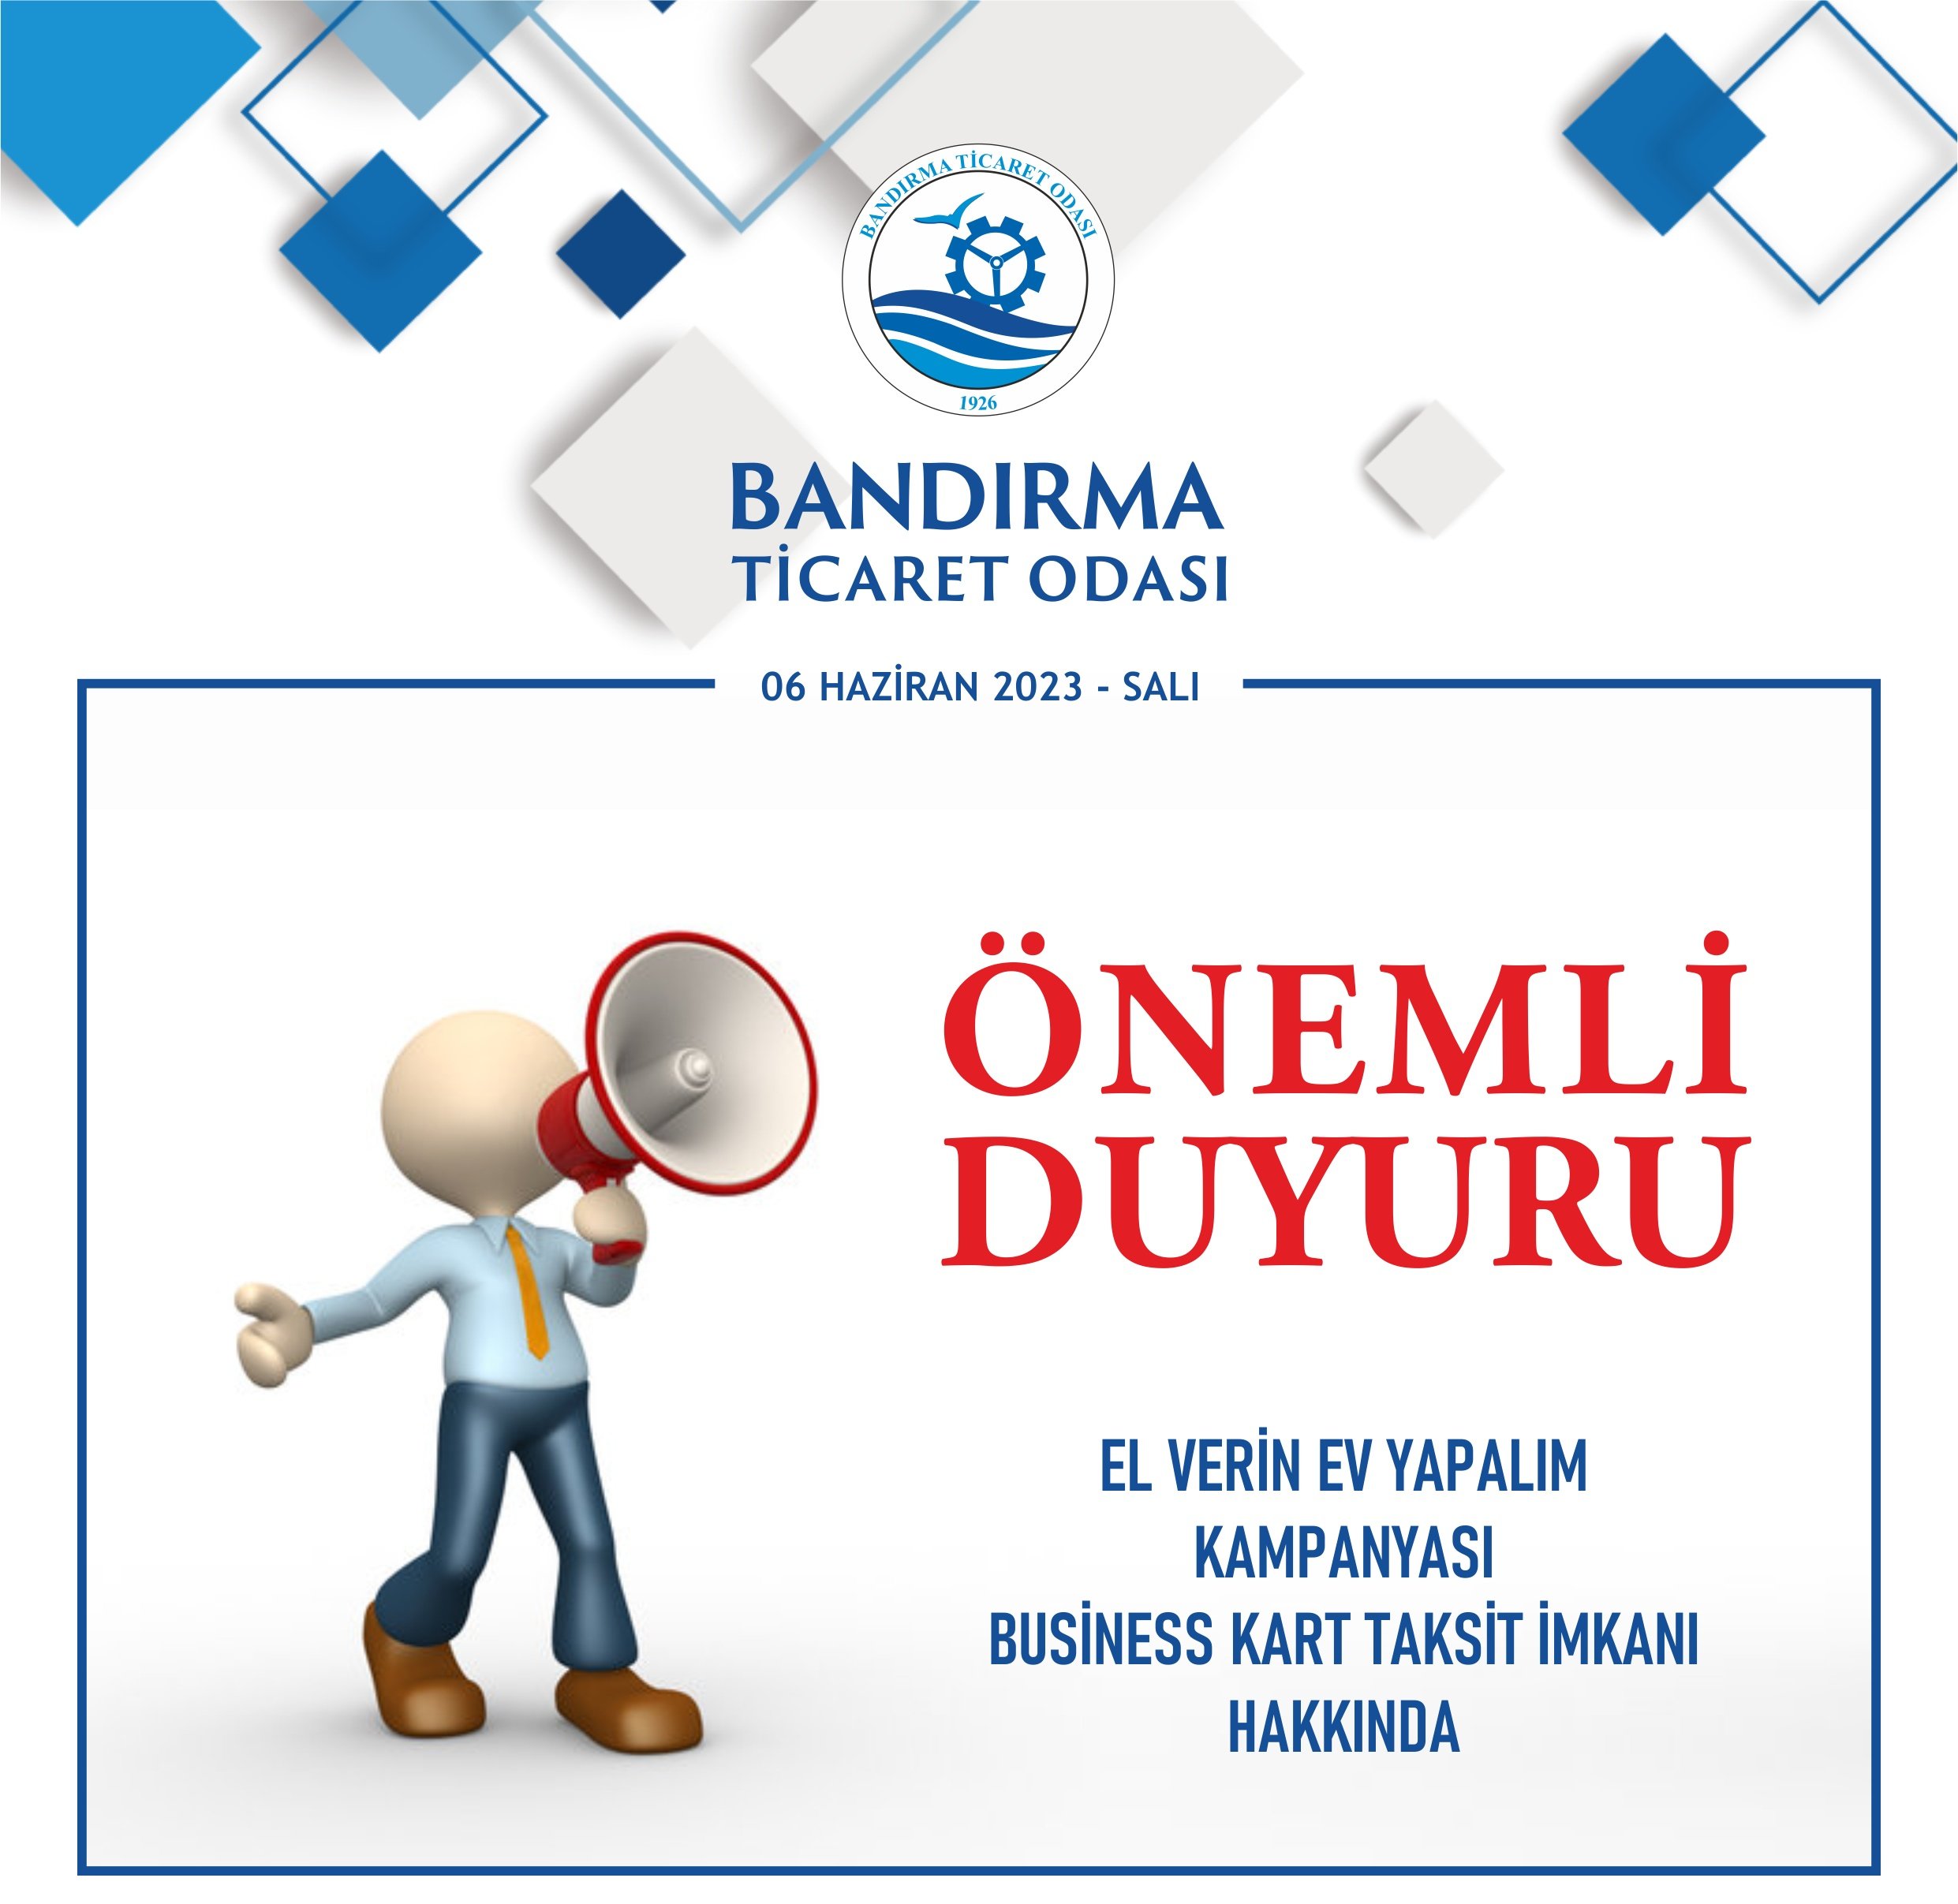 Bandırma Ticaret Odası, Türkiye